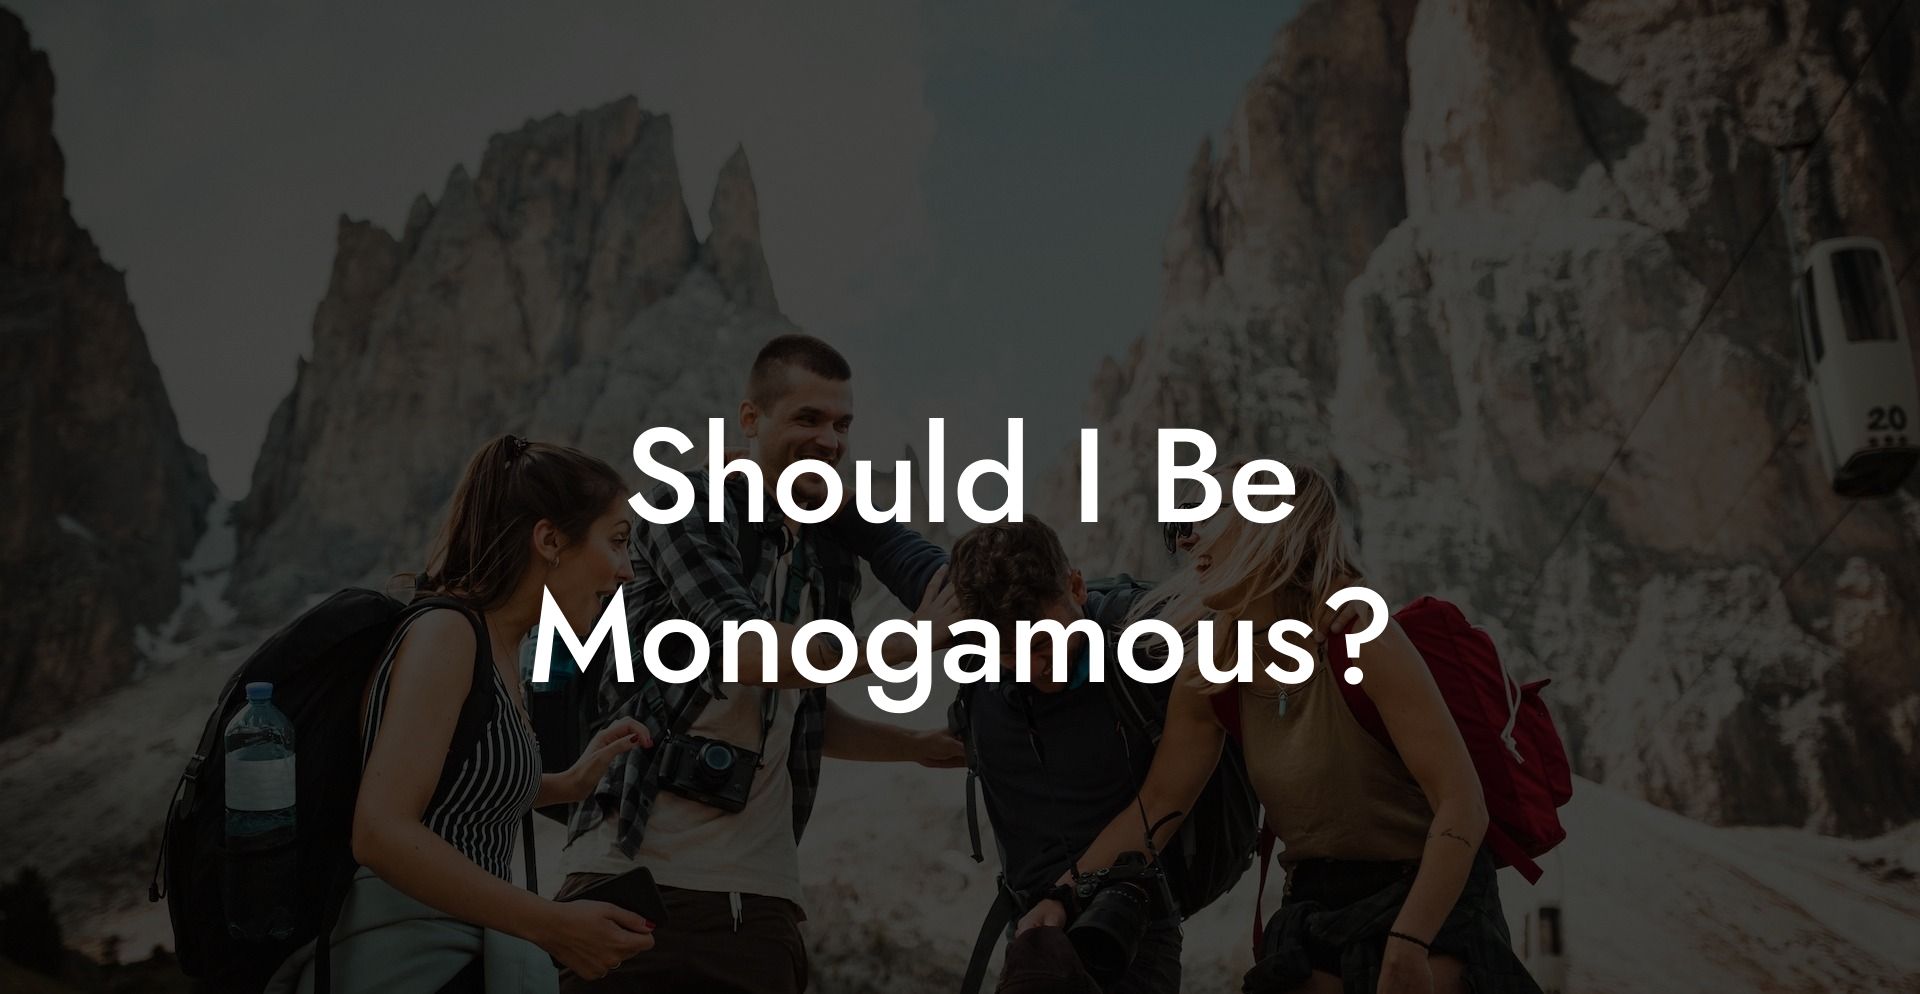 Should I Be Monogamous?